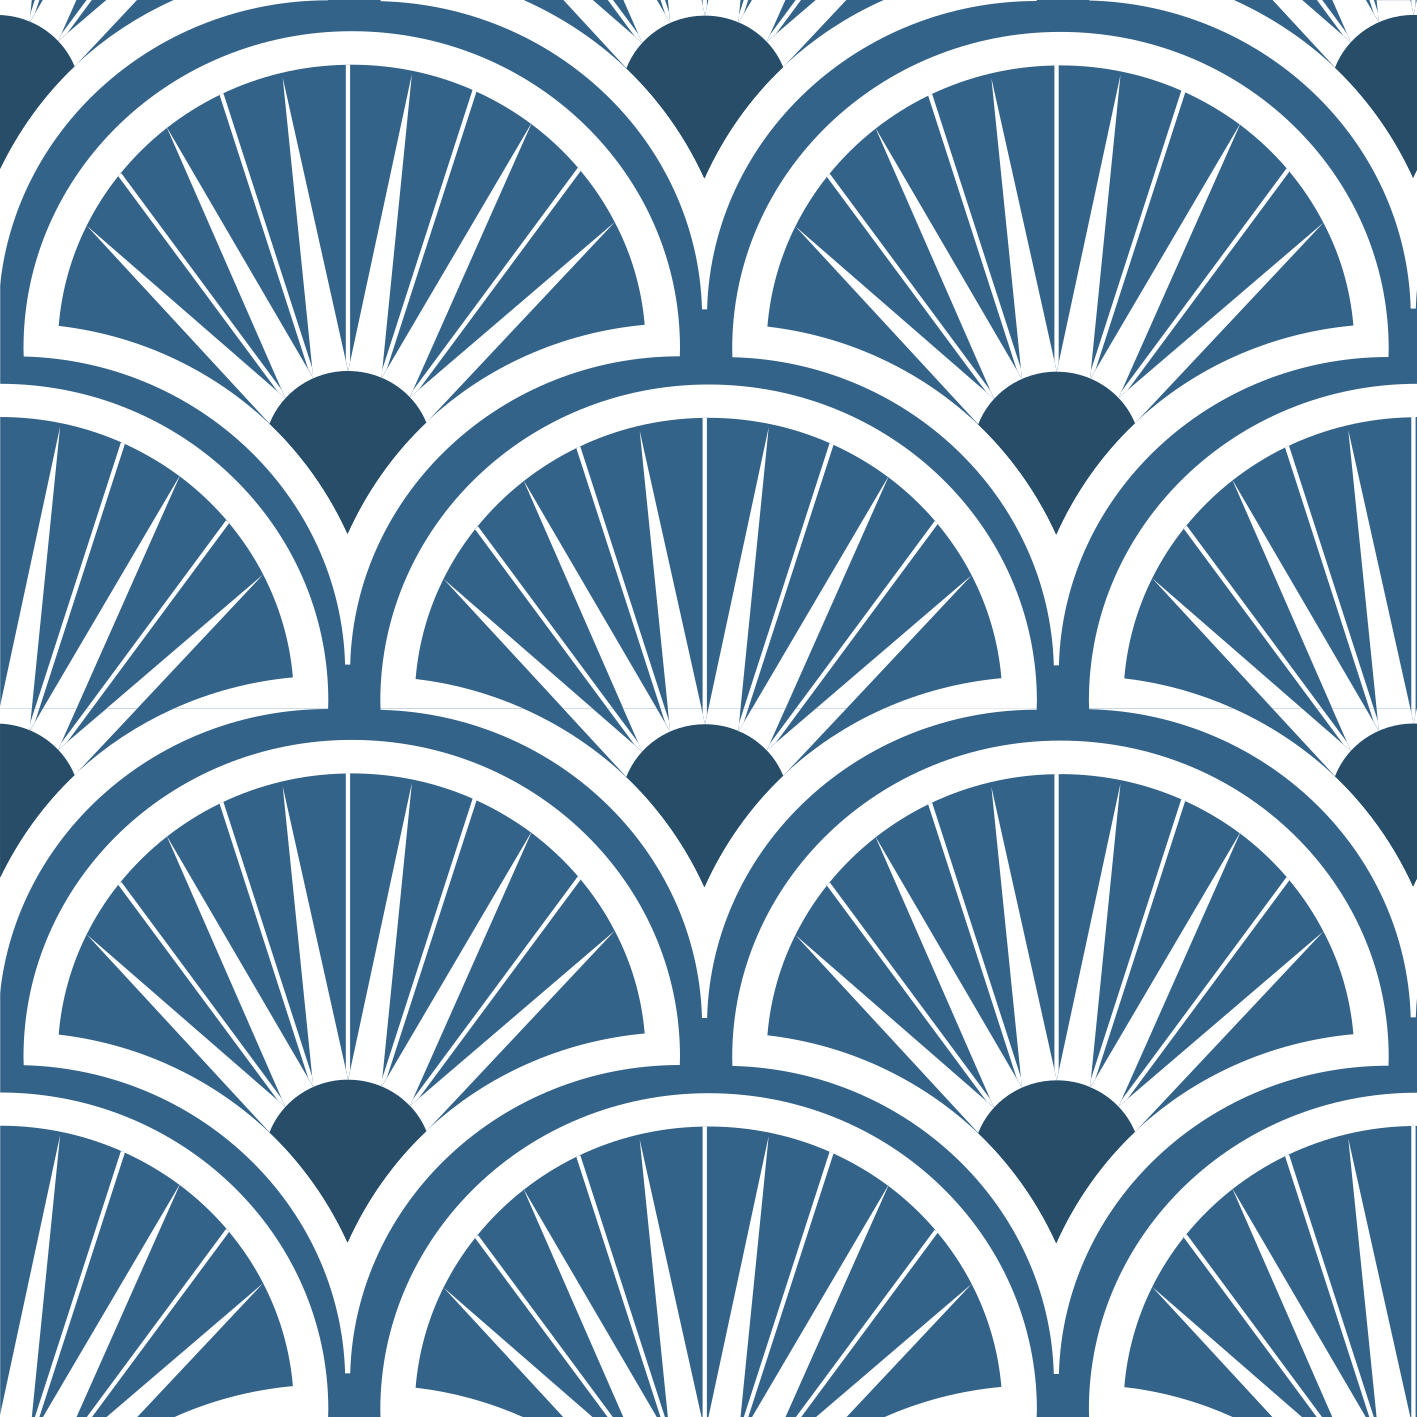 Sticker meuble motif géométrique bleu